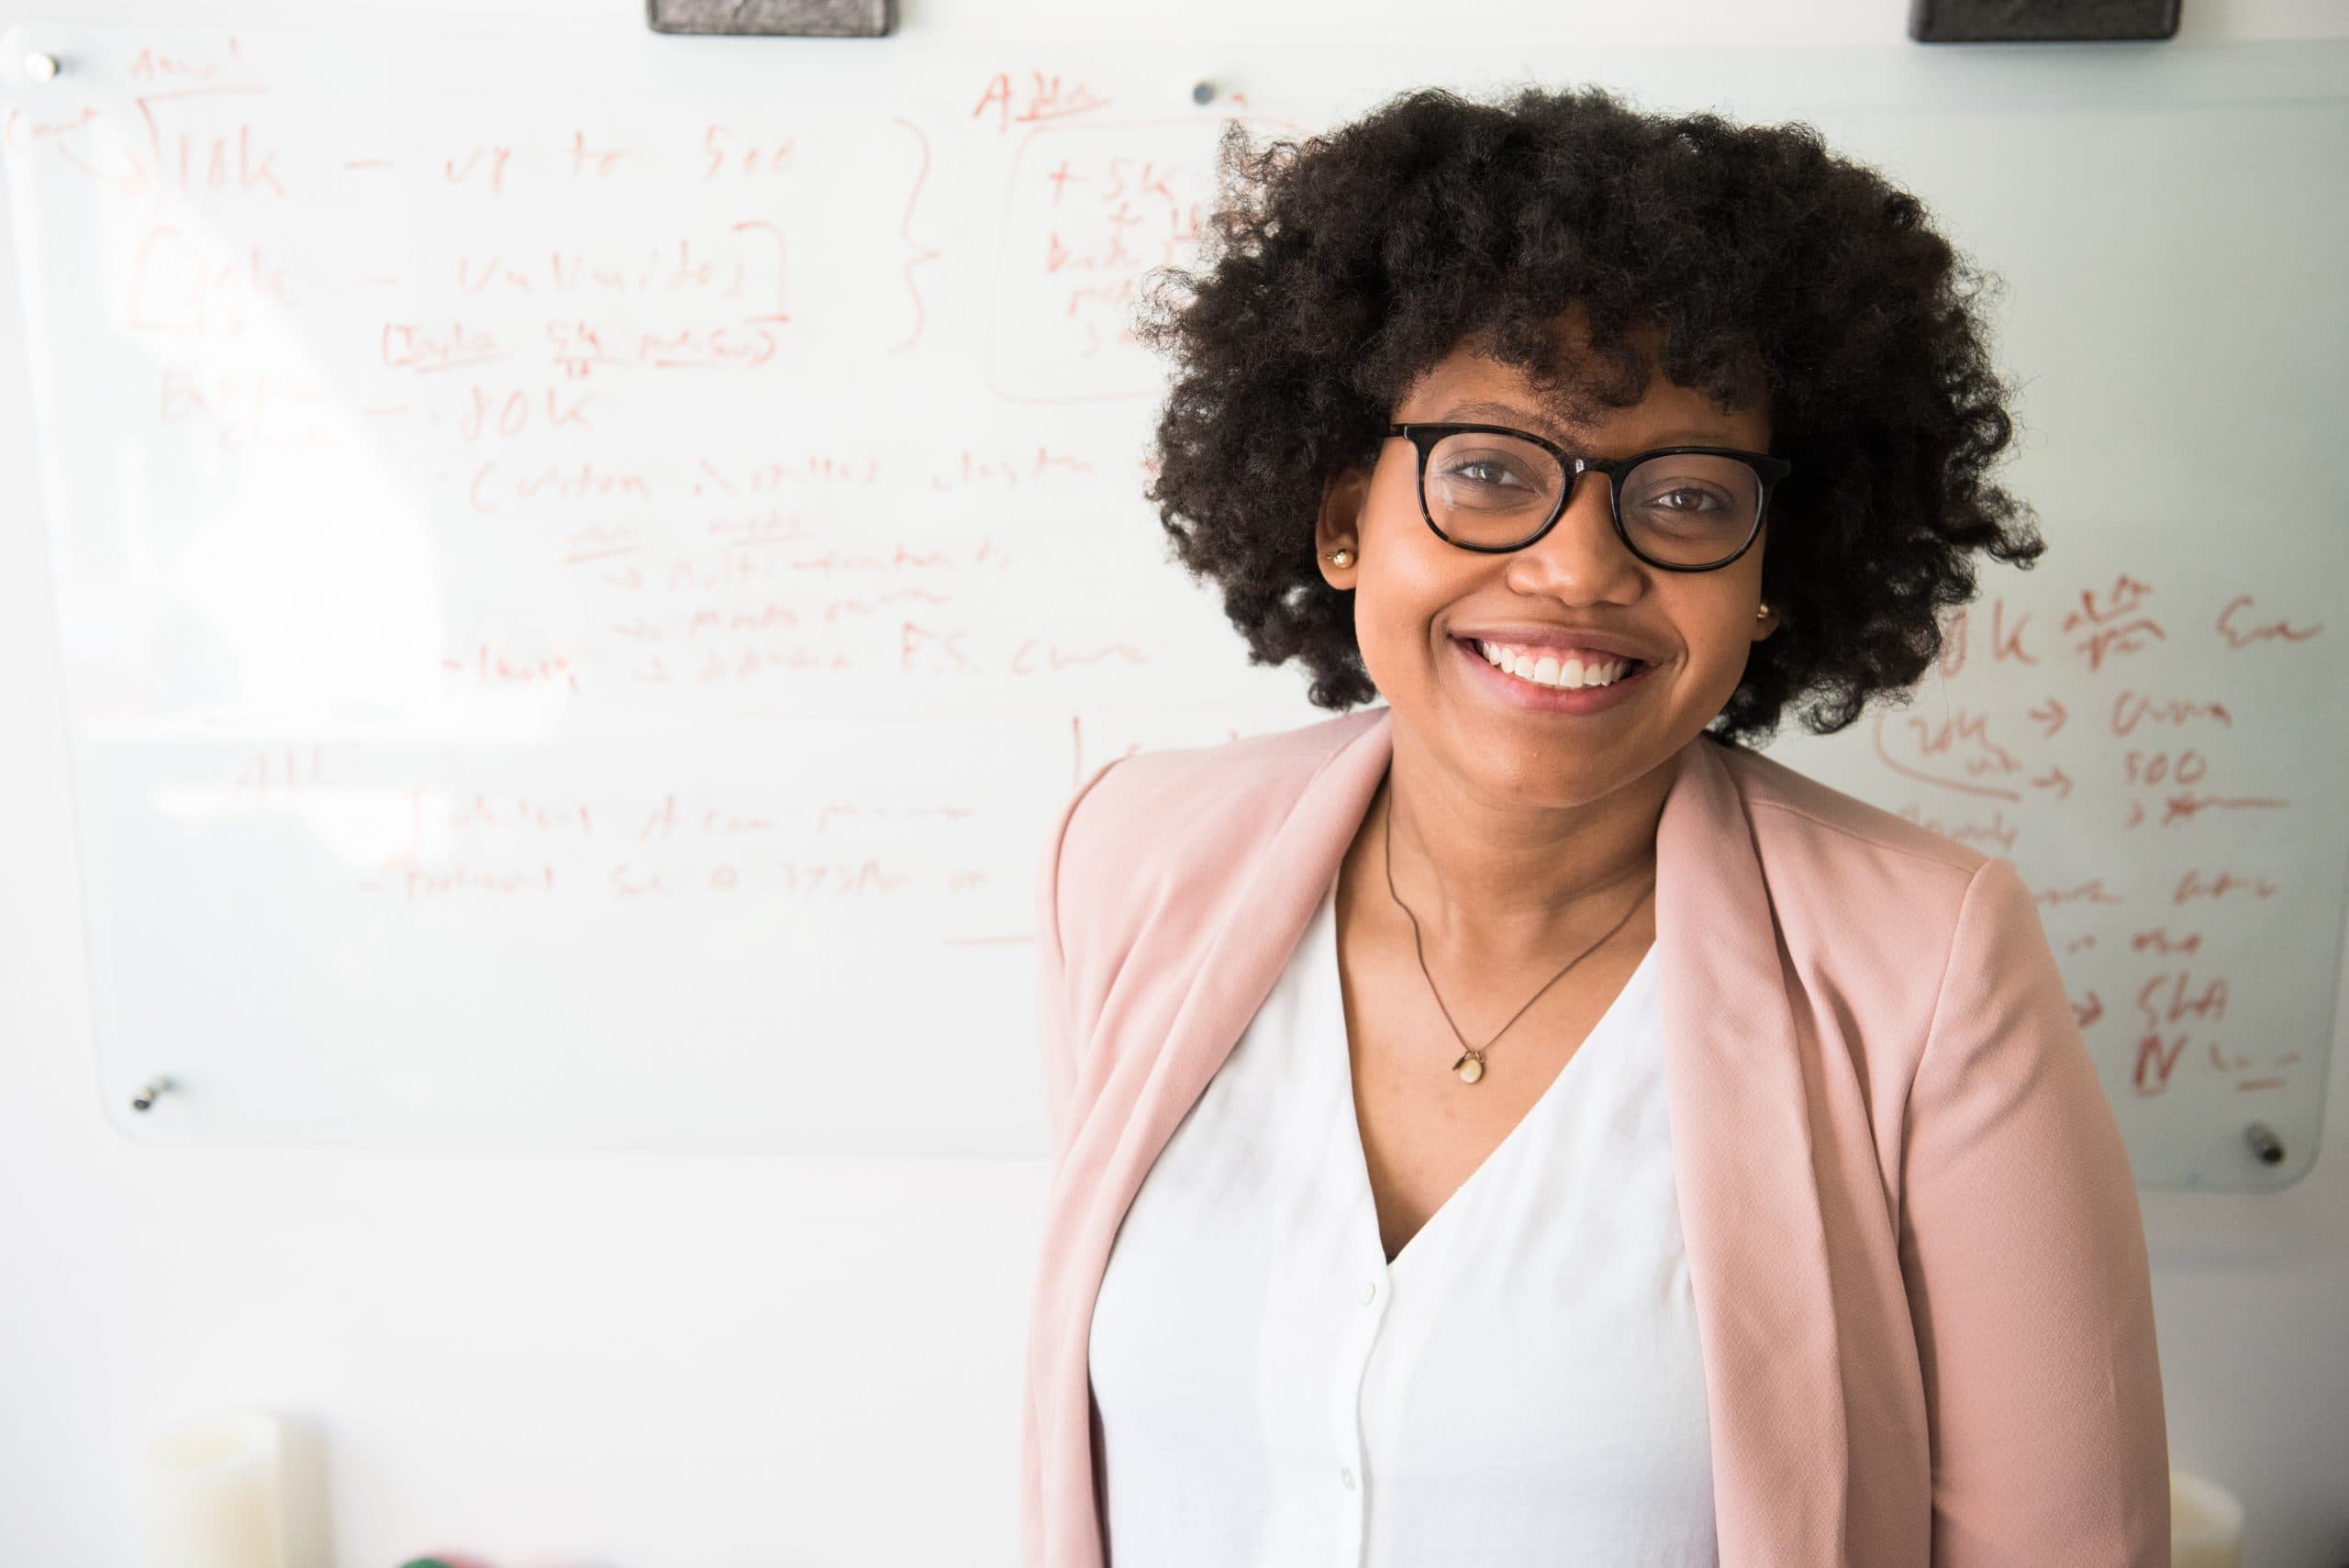 Mulheres negras ocupam apenas 3% de cargos em programas de pós-graduações no país